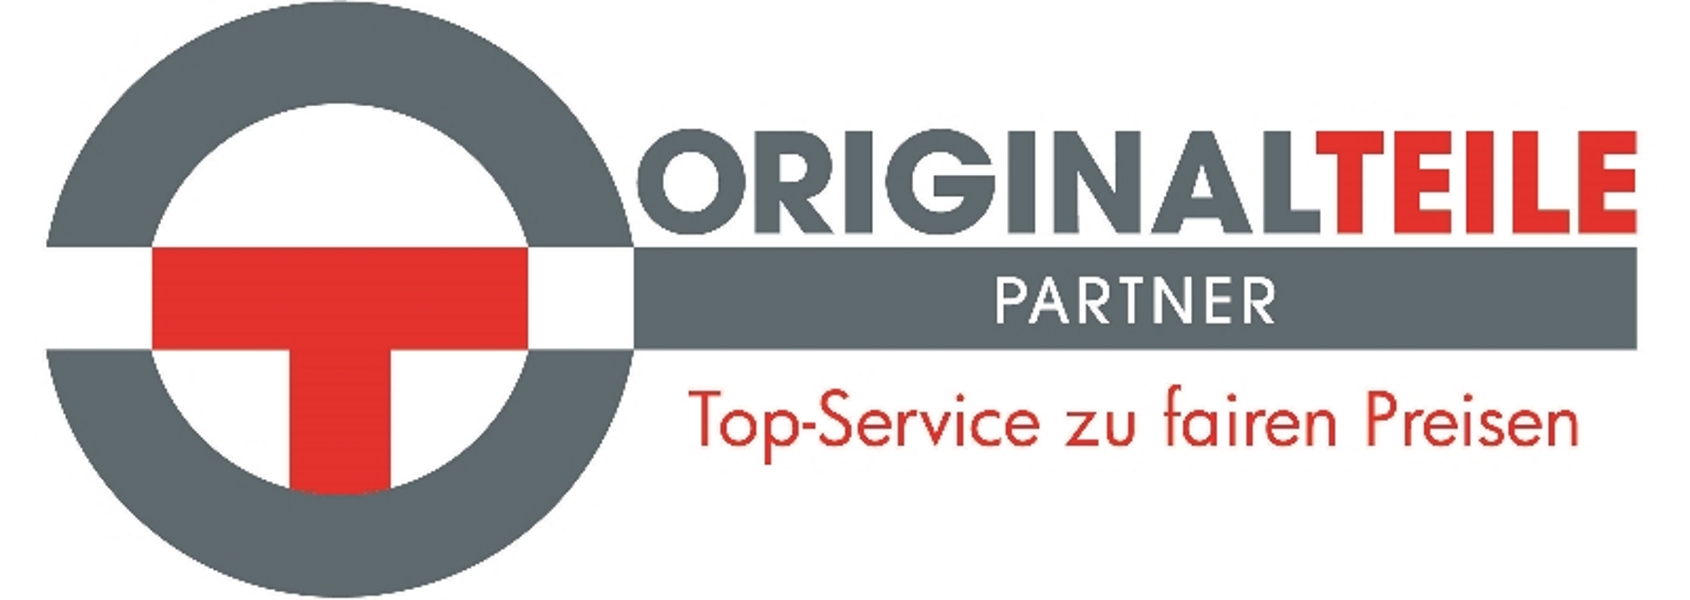 Birner Originalteile Partner Logo